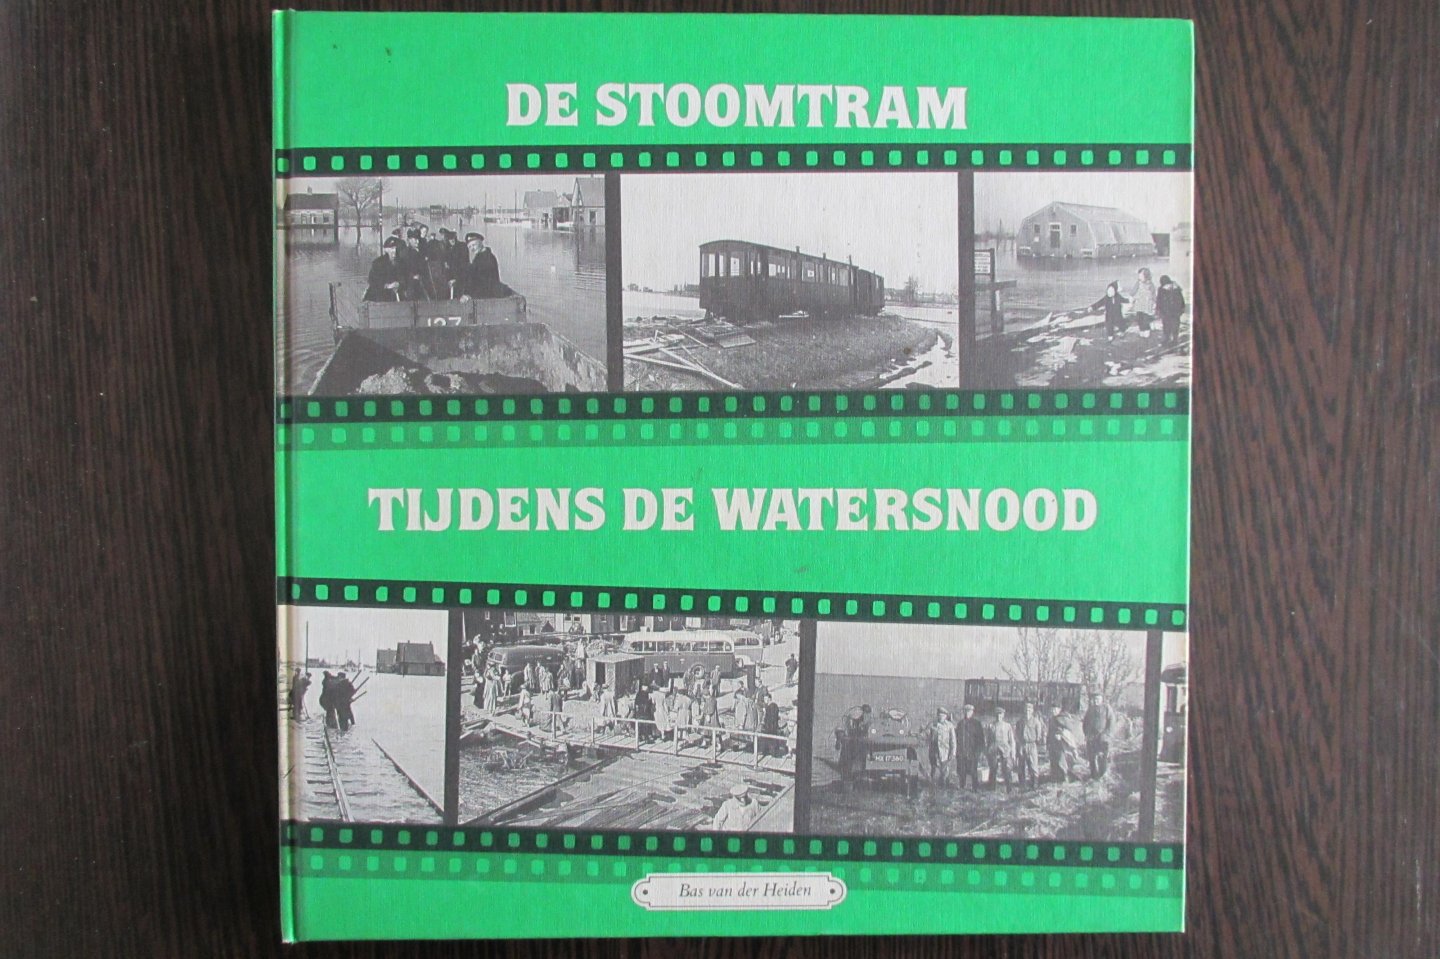 Heiden, B. van der - De Stoomtram tijdens de watersnood - deel 9